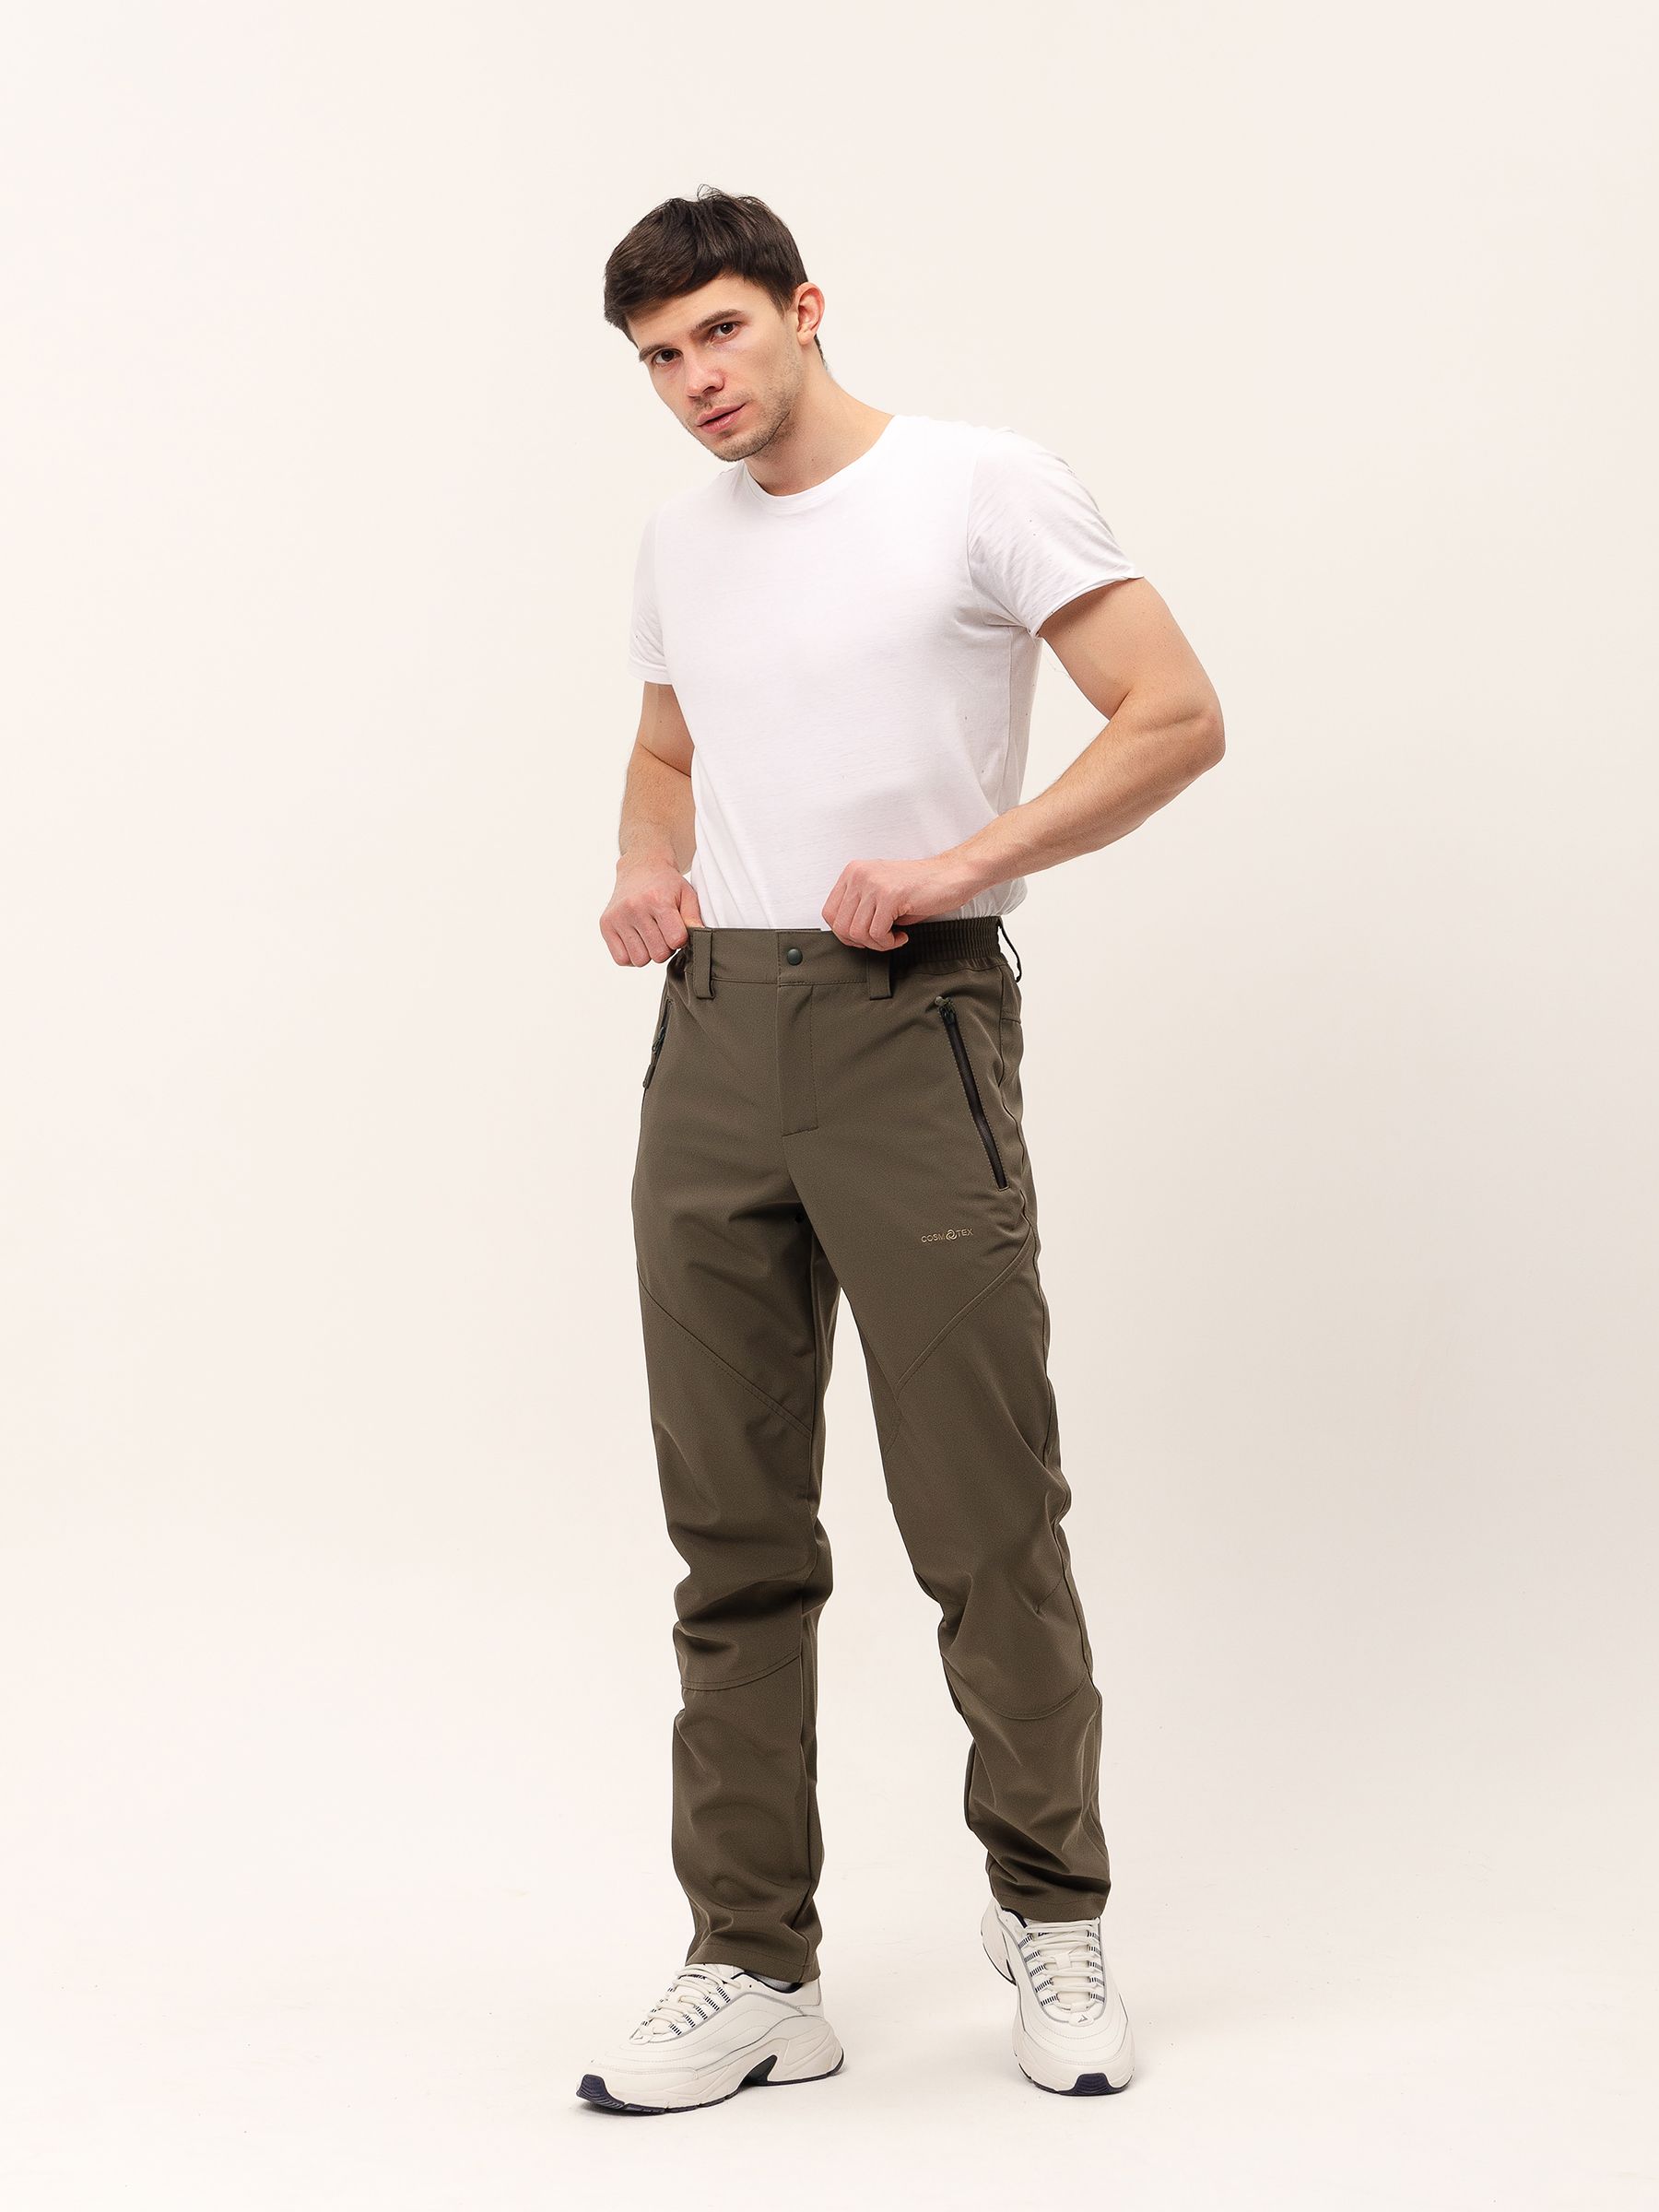 Демисезонные мужские мембранные брюки Софтшелл, цвет светлый хаки измембранной ткани